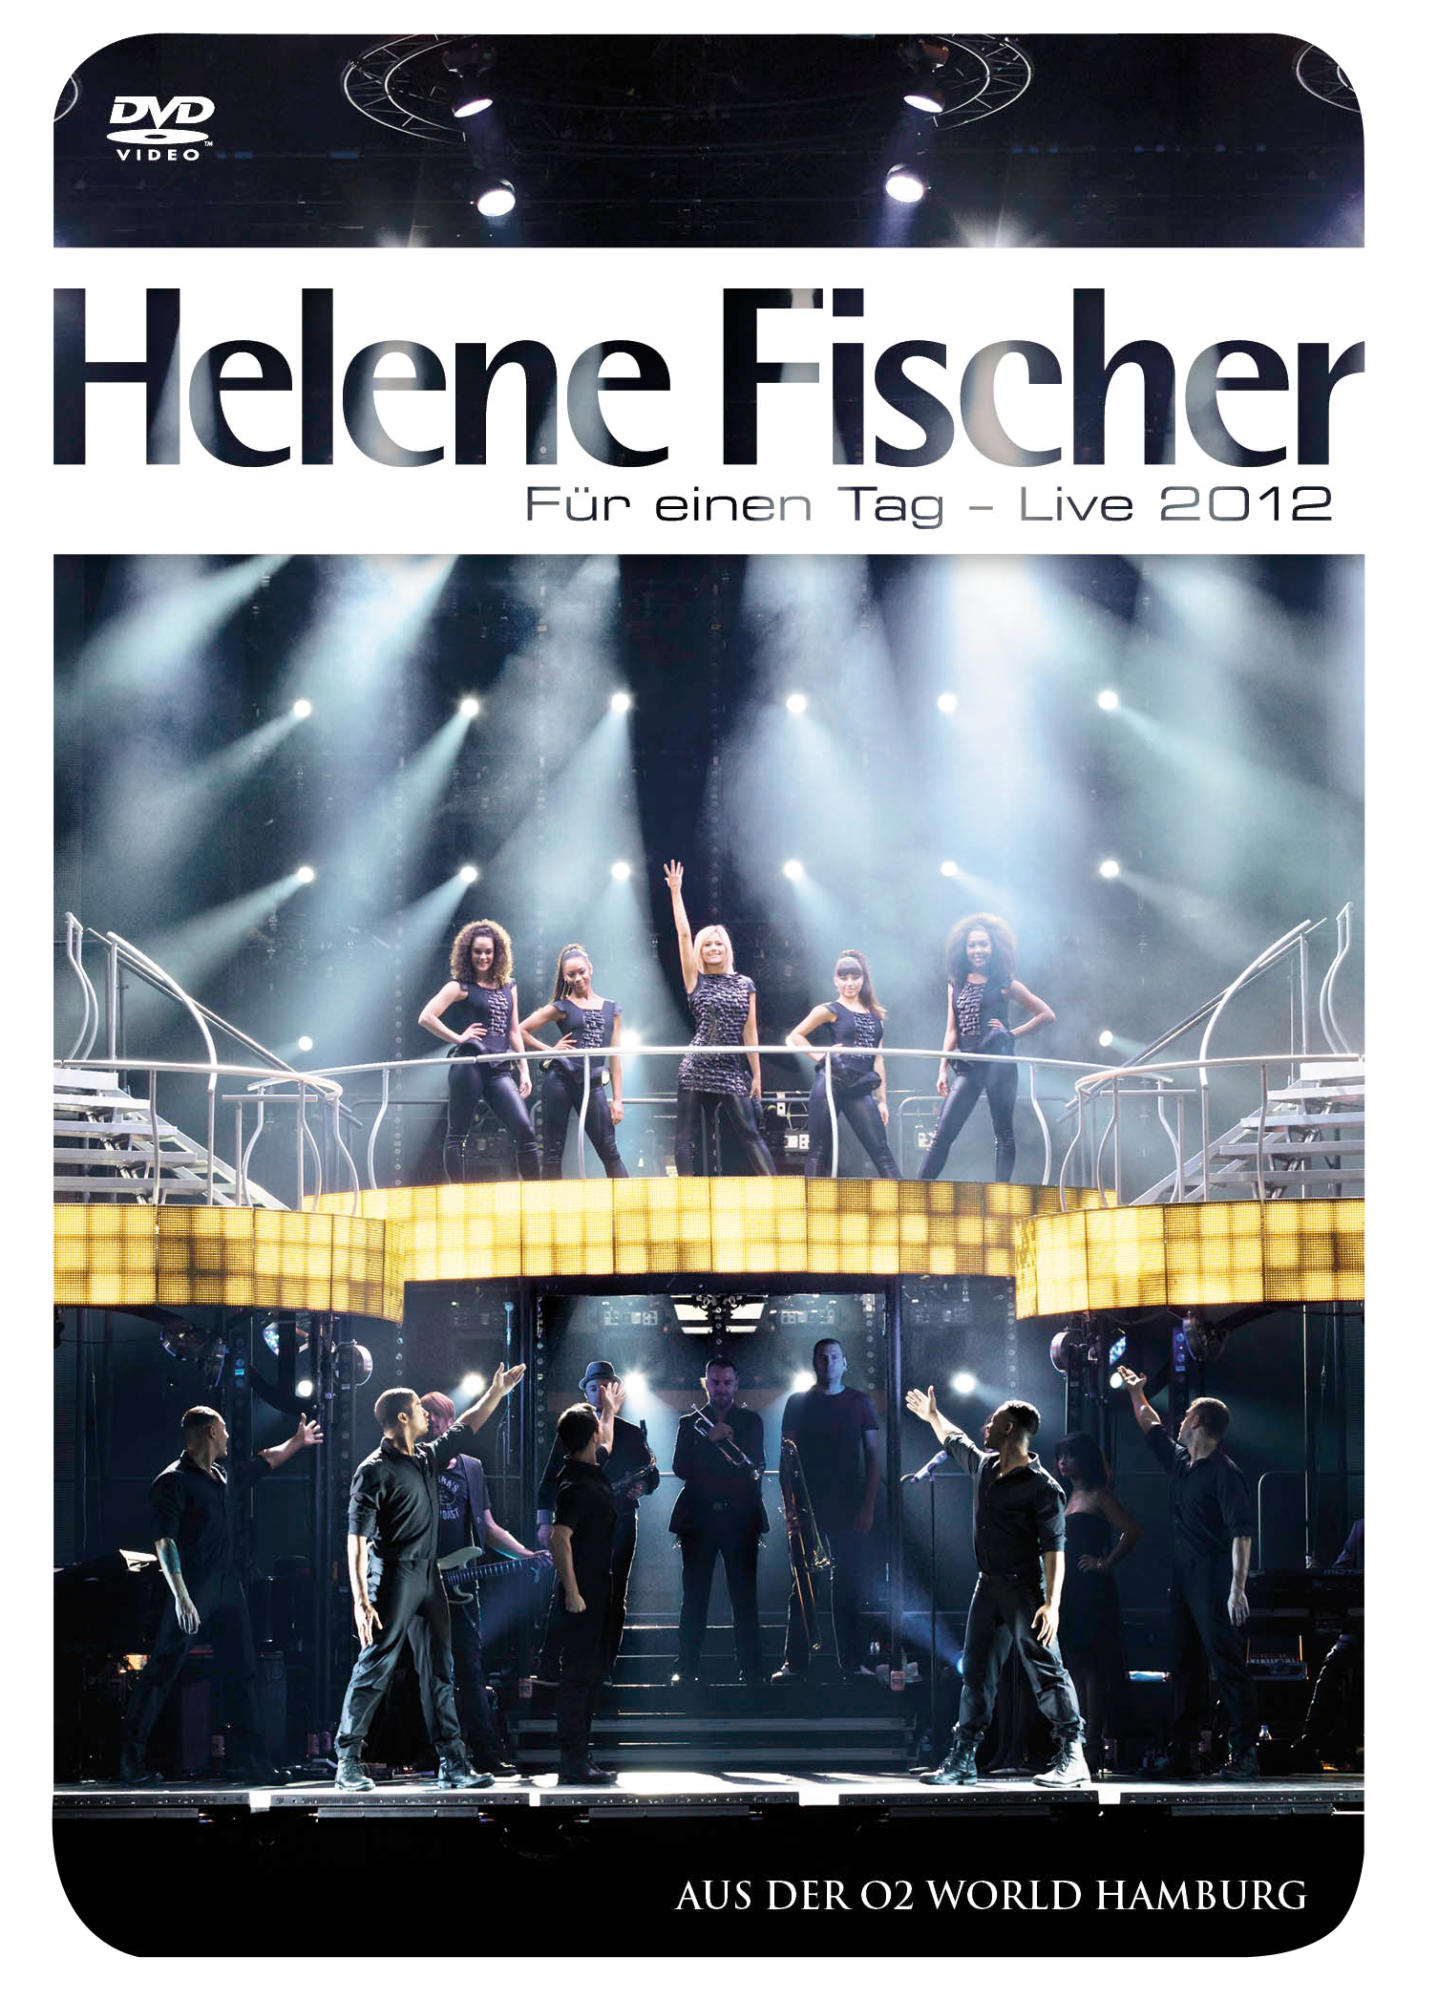 (LIVE) - EINEN FÜR Fischer TAG - (DVD) Helene